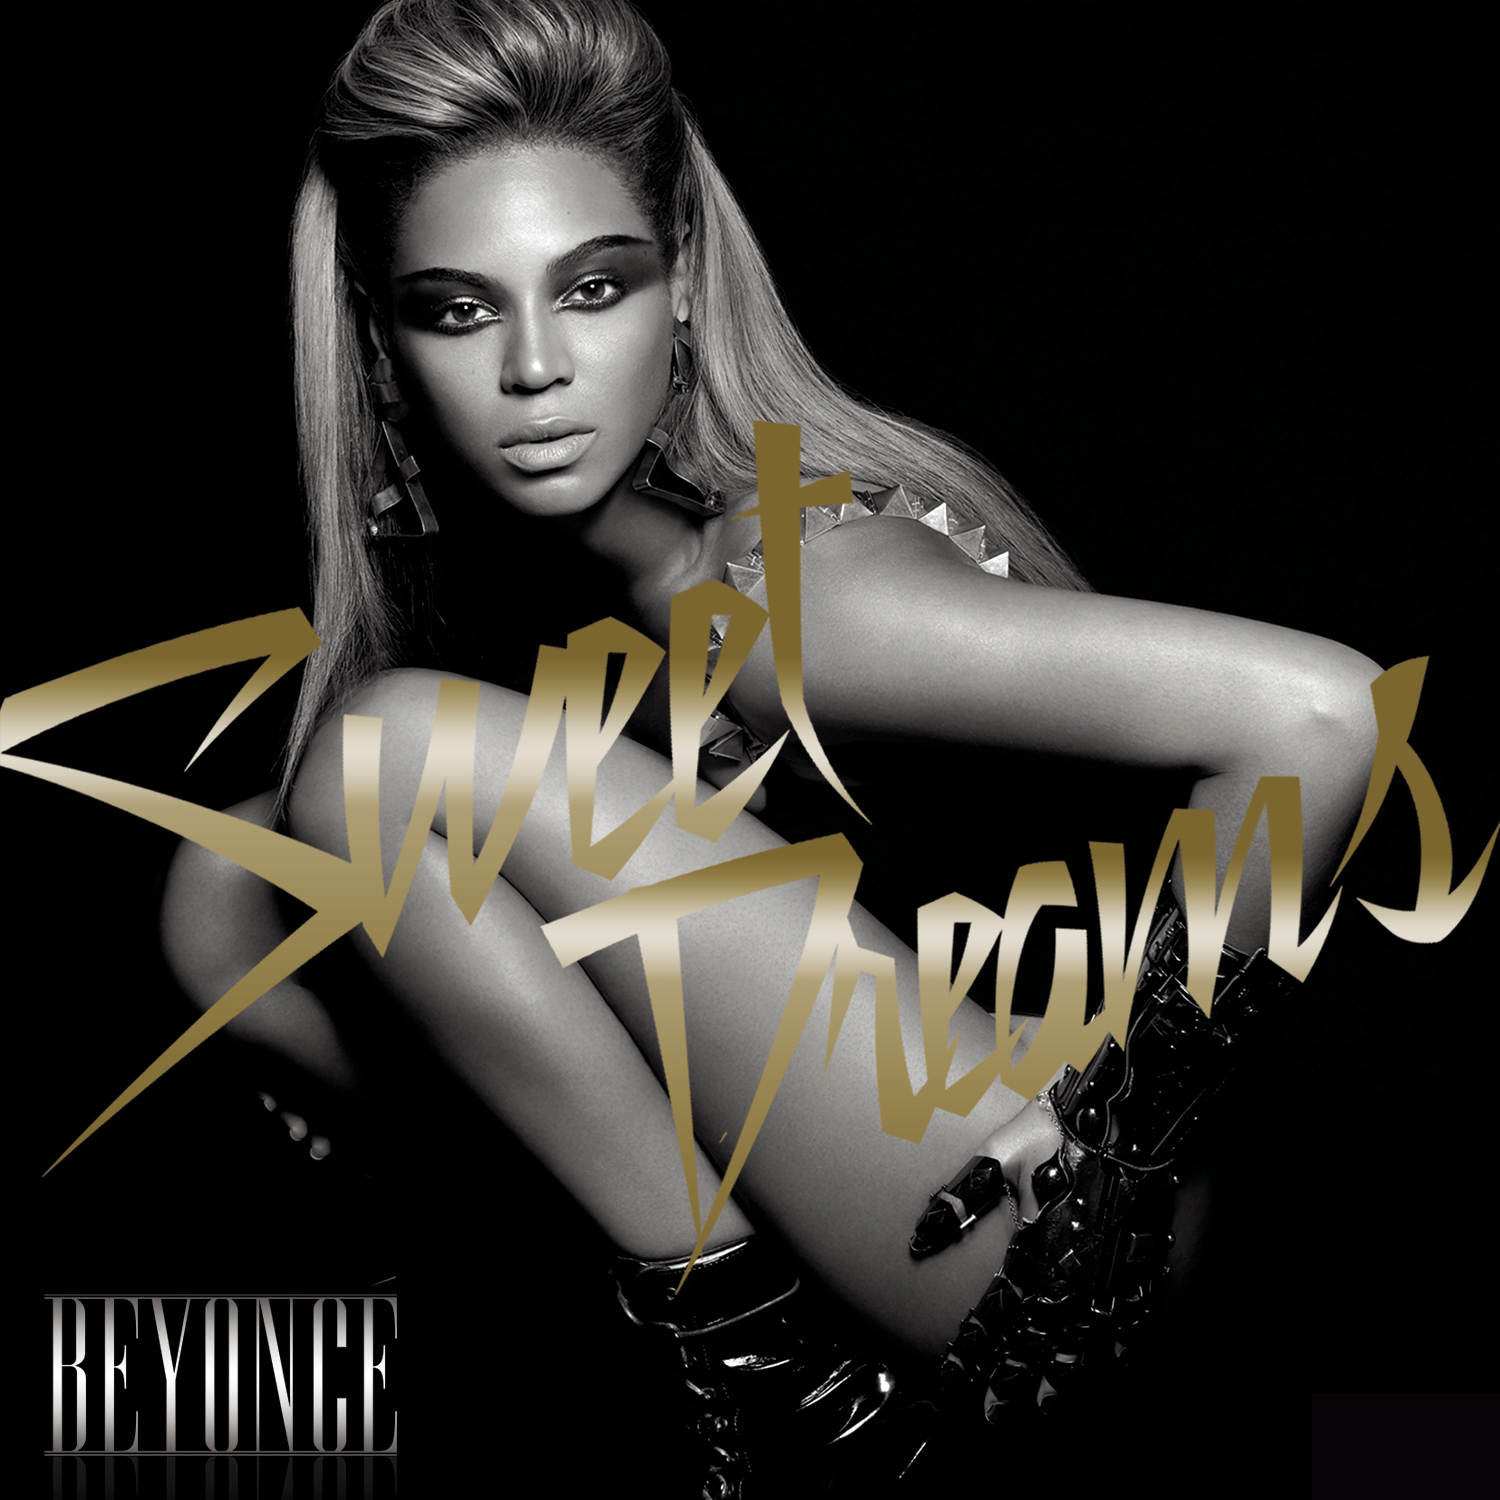 Beyonce's "Sweet Dreams"